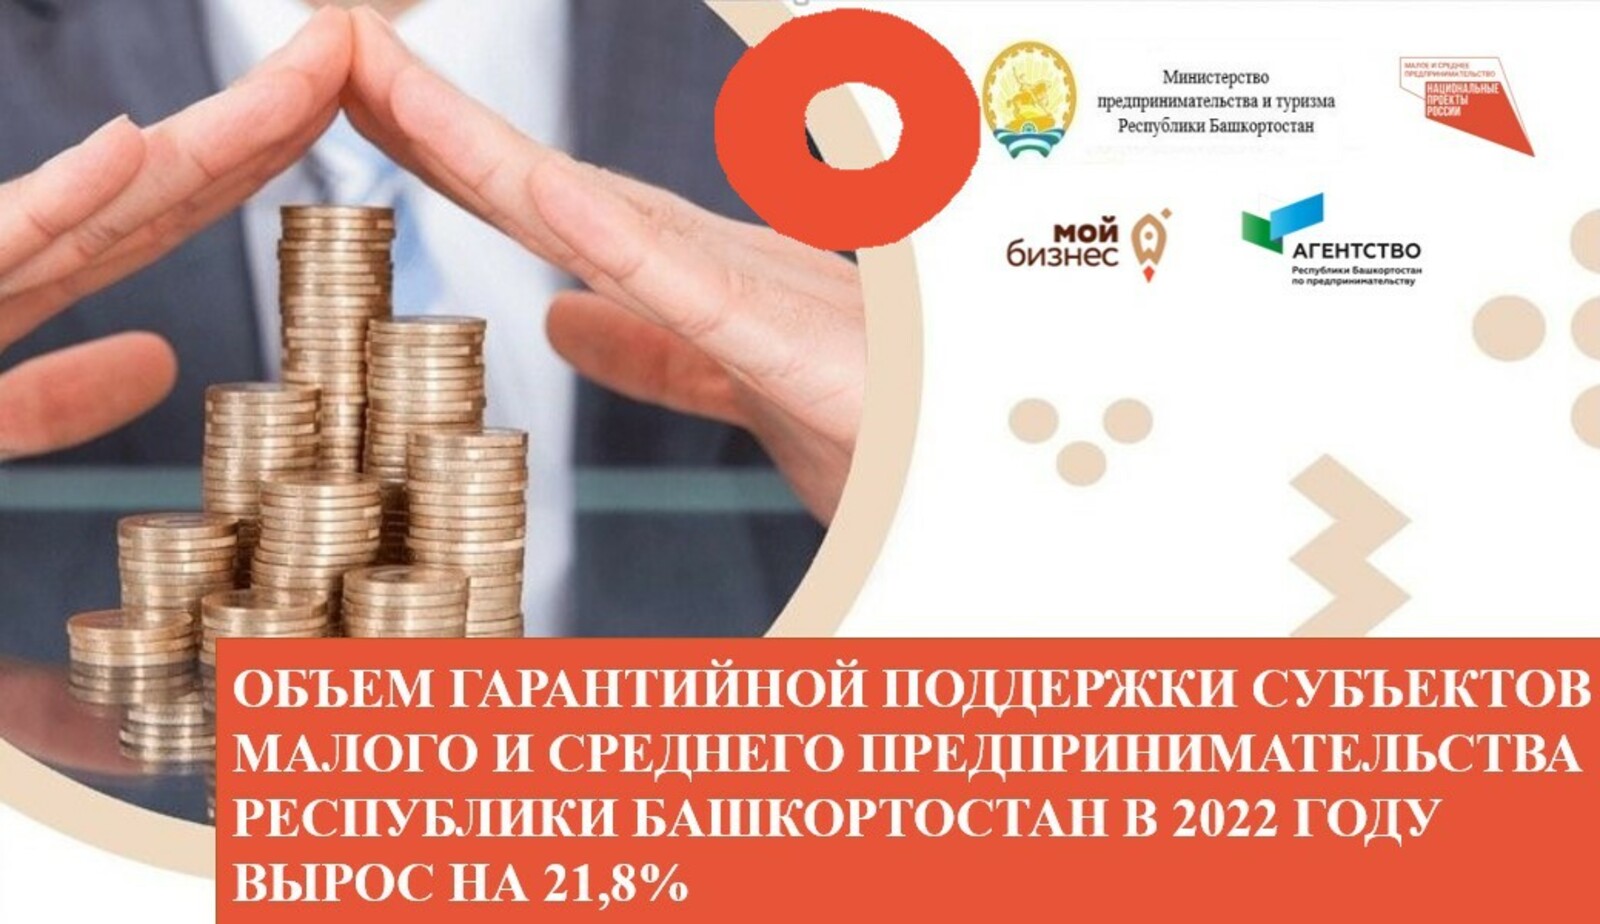 Объём гарантийной поддержки субъектов малого и среднего предпринимательства Республики Башкортостан в 2022 году вырос на 21,8%